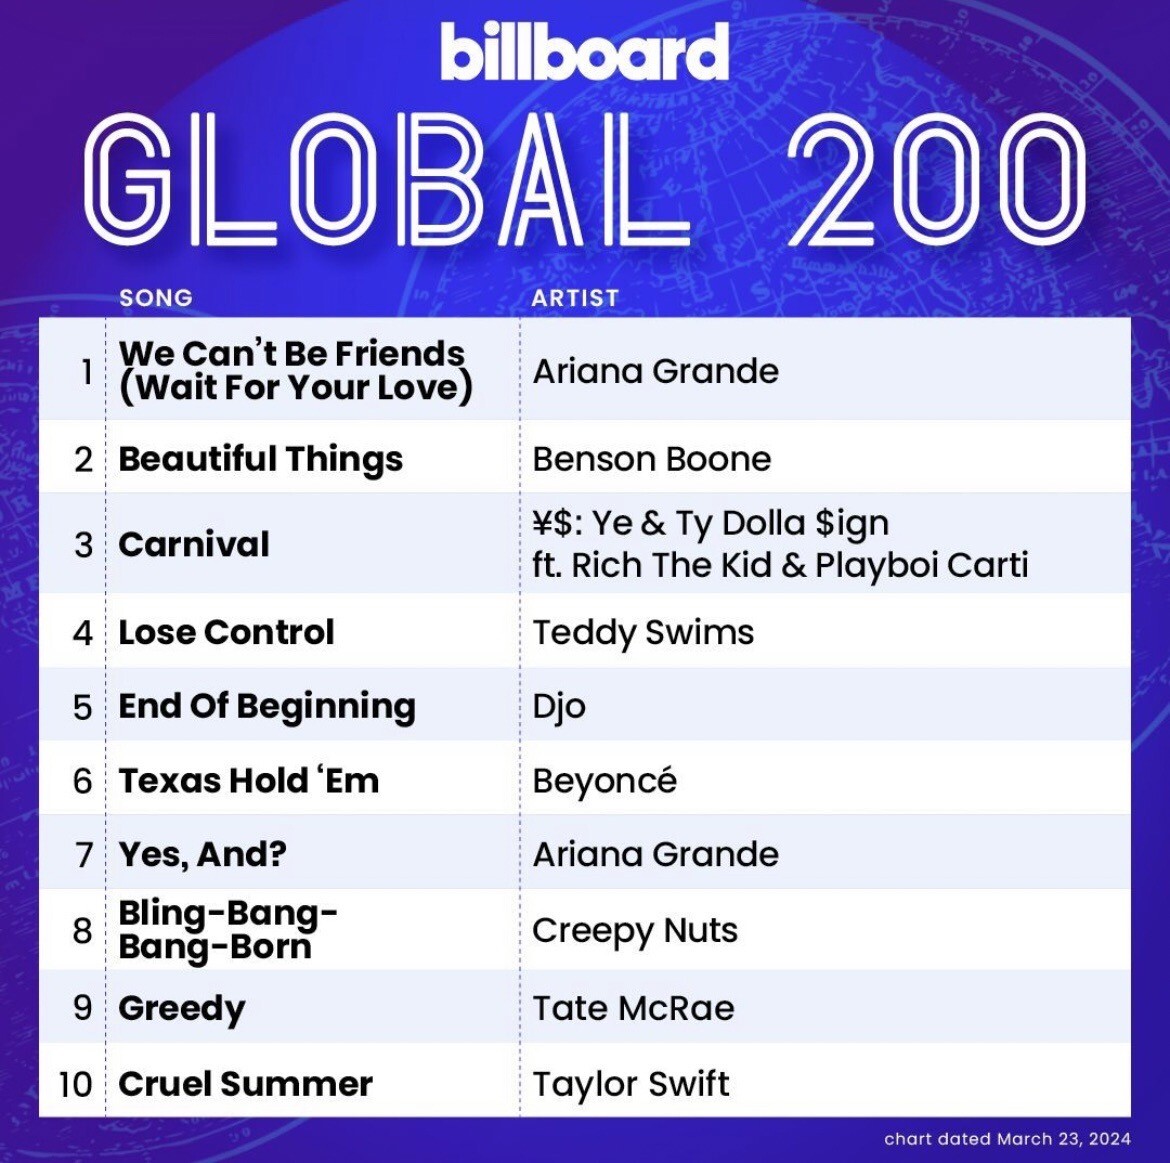 ฮอตไม่หยุด!! ซูเปอร์สตาร์สาว "Ariana Grande" ส่งแทร็กจากอัลบั้ม "eternal sunshine" ครองอันดับ 1 บนชาร์ต "Billboard 200" และ "Billboard Hot 100"